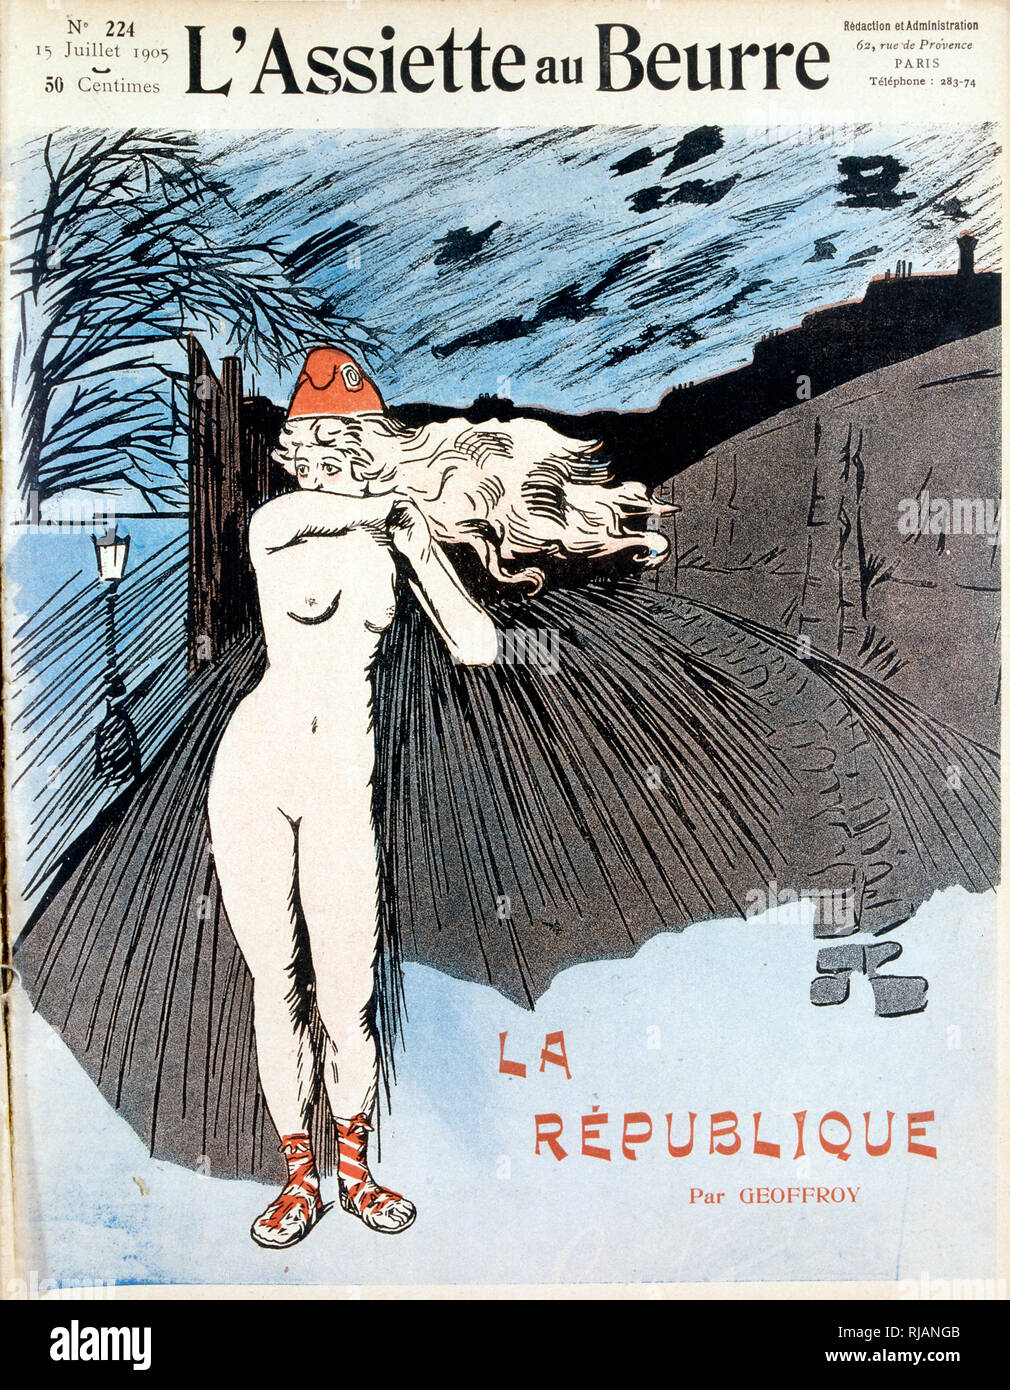 La République 1905, Illustration de "L'assiette au beurre", un hebdomadaire français illustré revue satirique avec tendance politique anarchiste qui s'est essentiellement produite entre 1901 et 1912. Banque D'Images